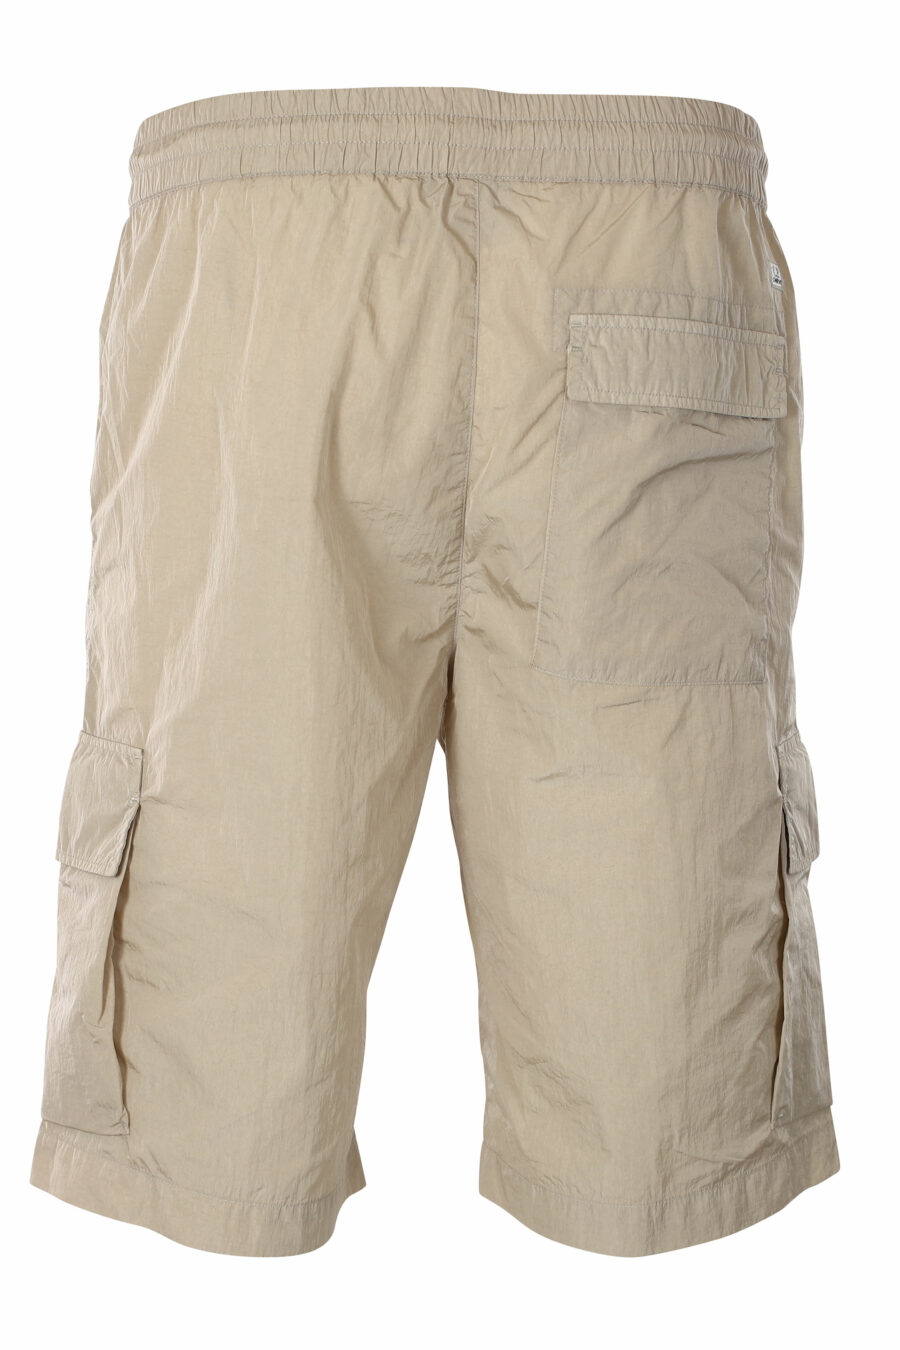 Pantalón corto midi beige estilo cargo con minilogo circular - IMG 9545